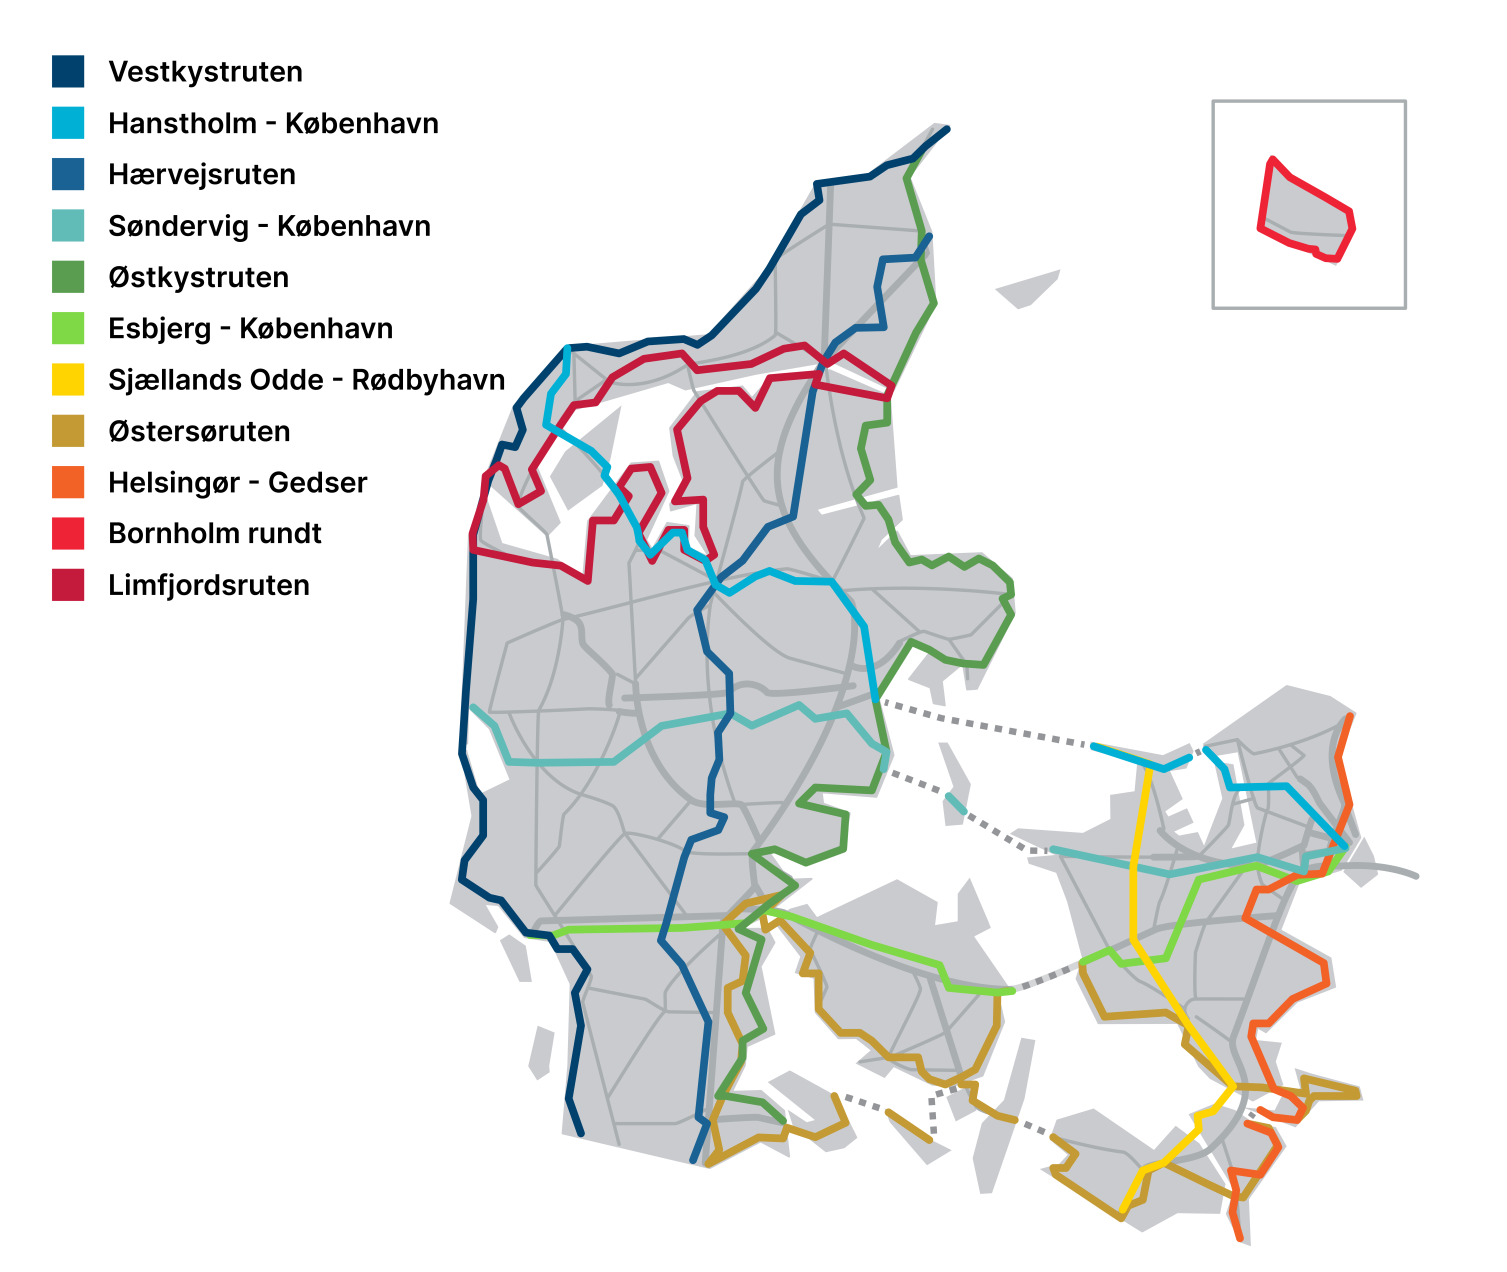 Ny skal trække cykelturister til Danmark | Vejdirektoratet